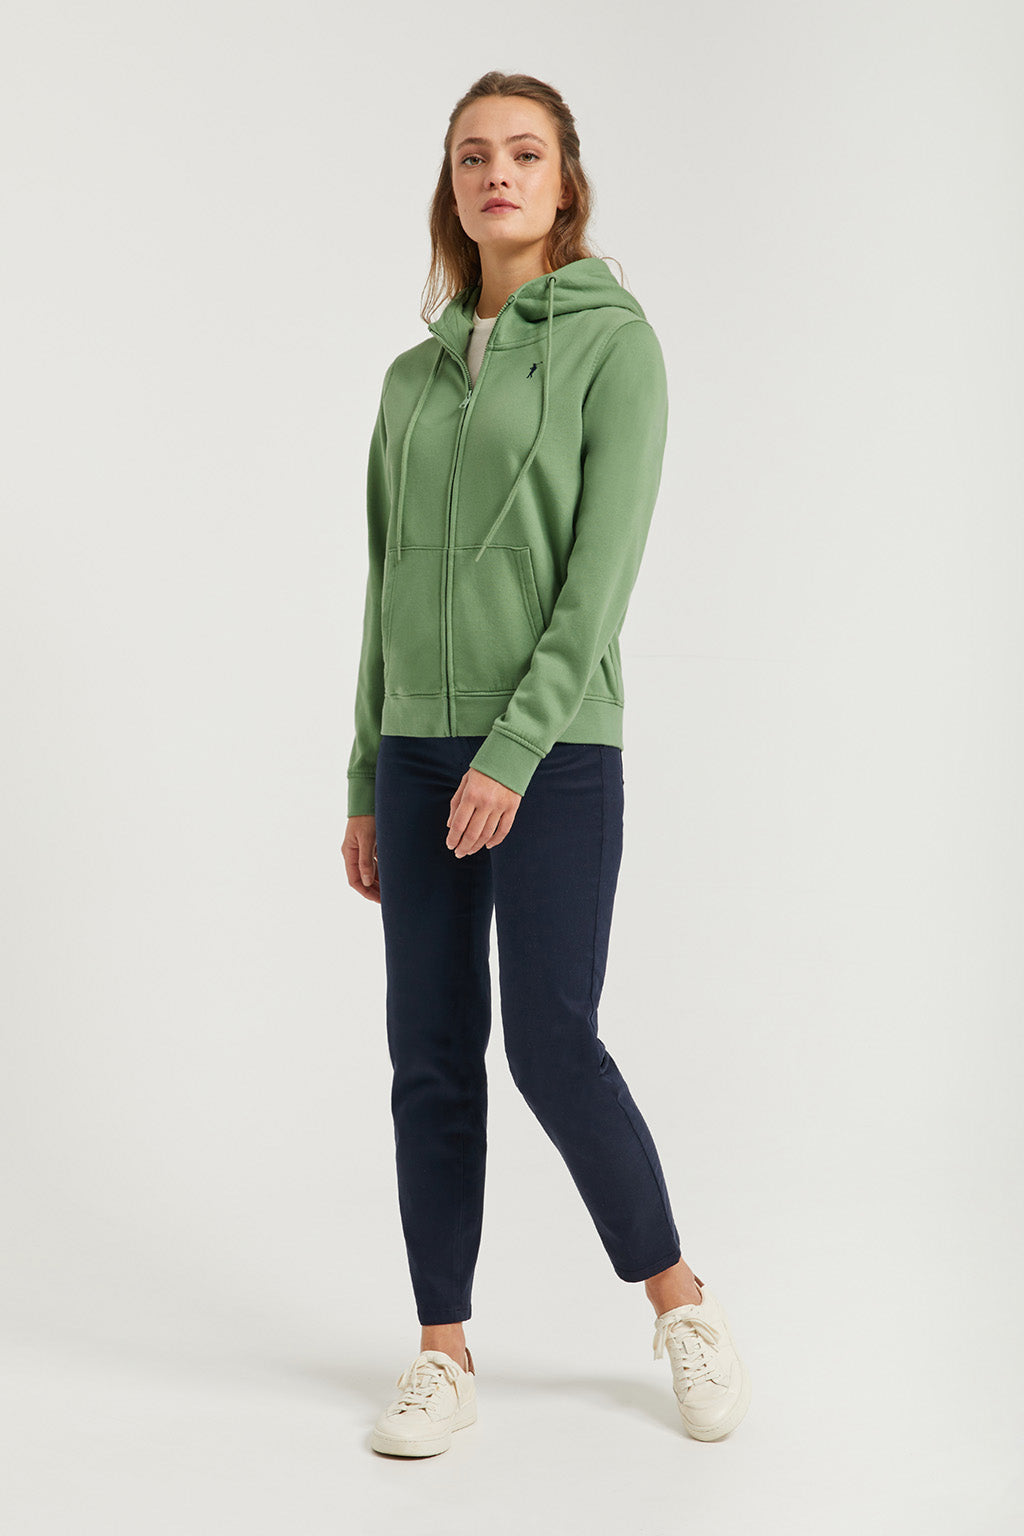 Sweat-shirt Femme Vert Demi-zip Coton Avec Poche –